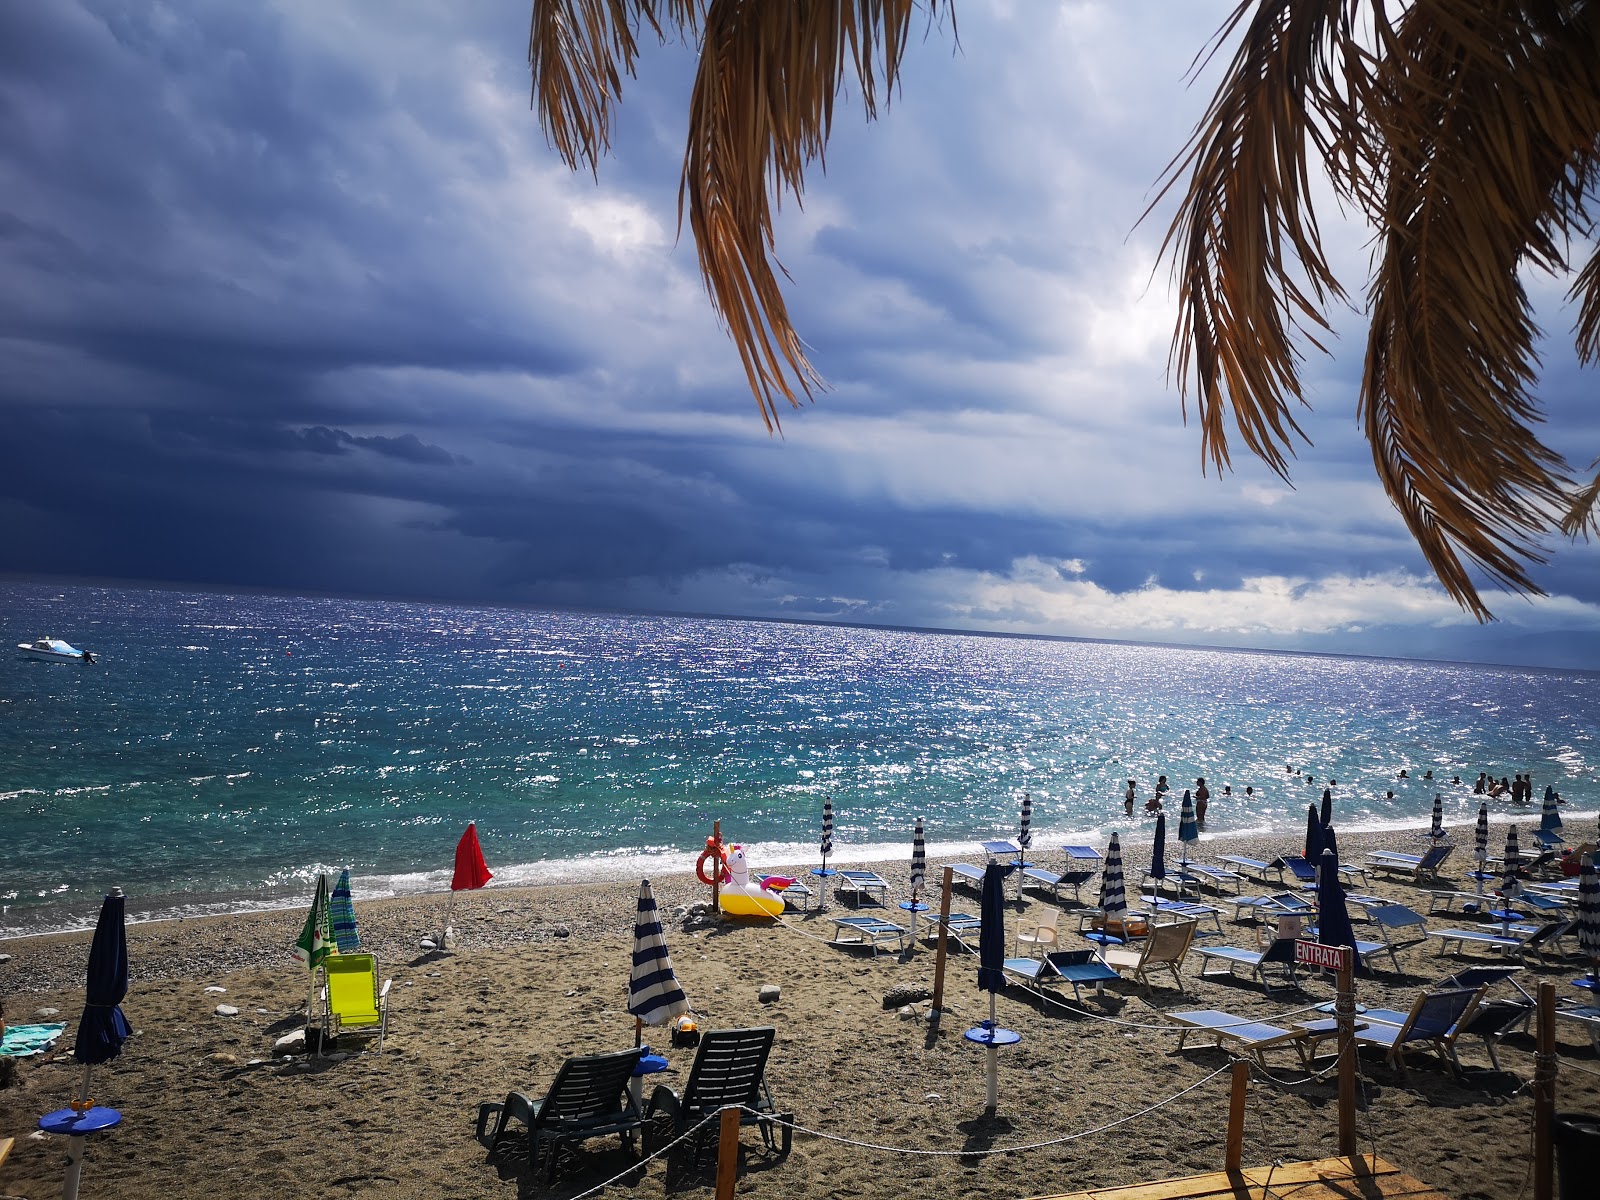 Spiaggia Calypso'in fotoğrafı kısmen temiz temizlik seviyesi ile